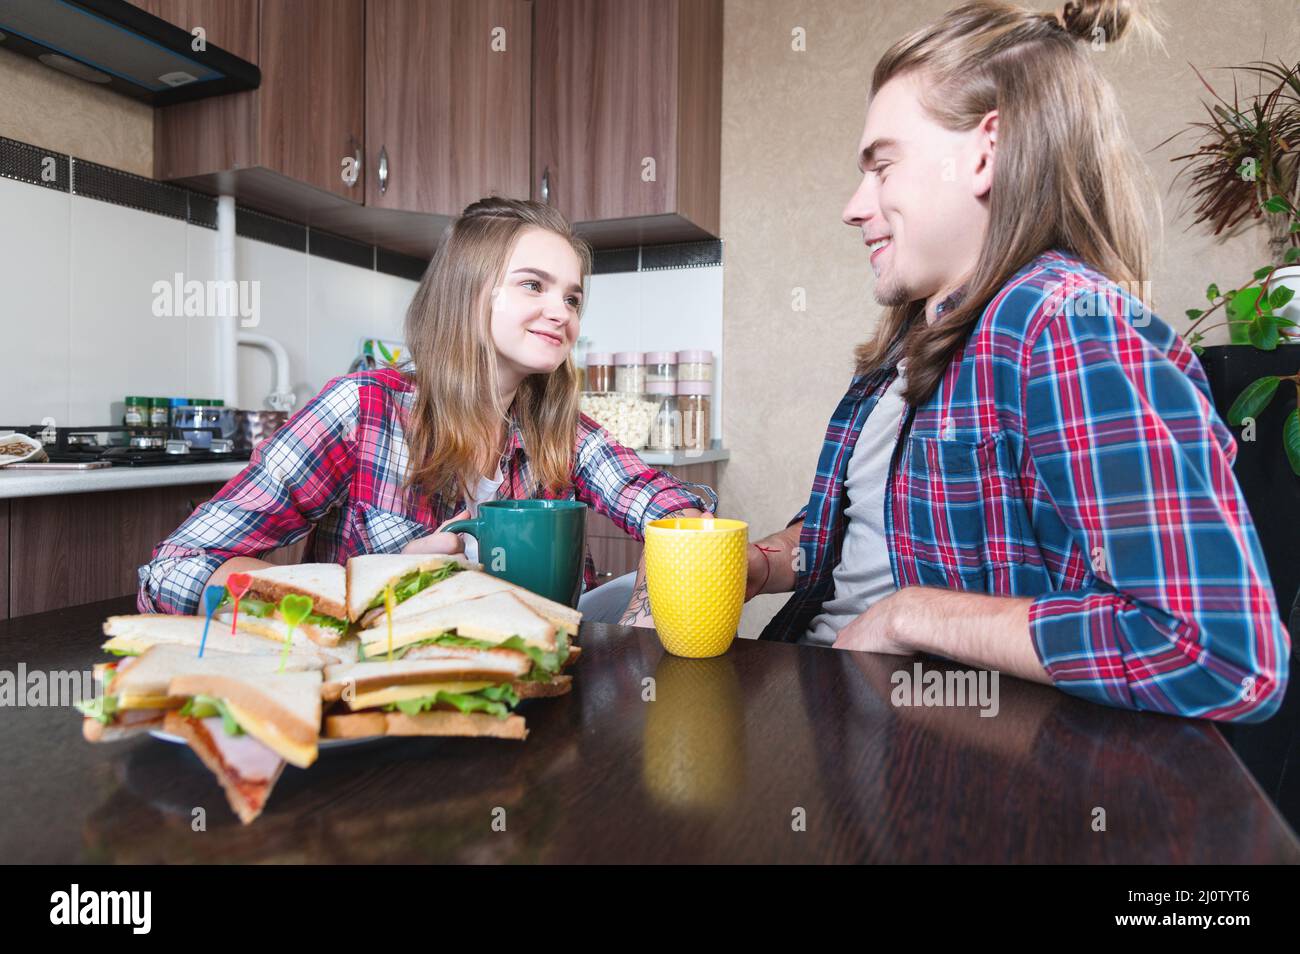 Eine junge Familie trinkt Tee mit Sandwiches in der Küche am Esstisch und schaut sich gegenseitig an. Ein Ehepaar mit langen ha Stockfoto